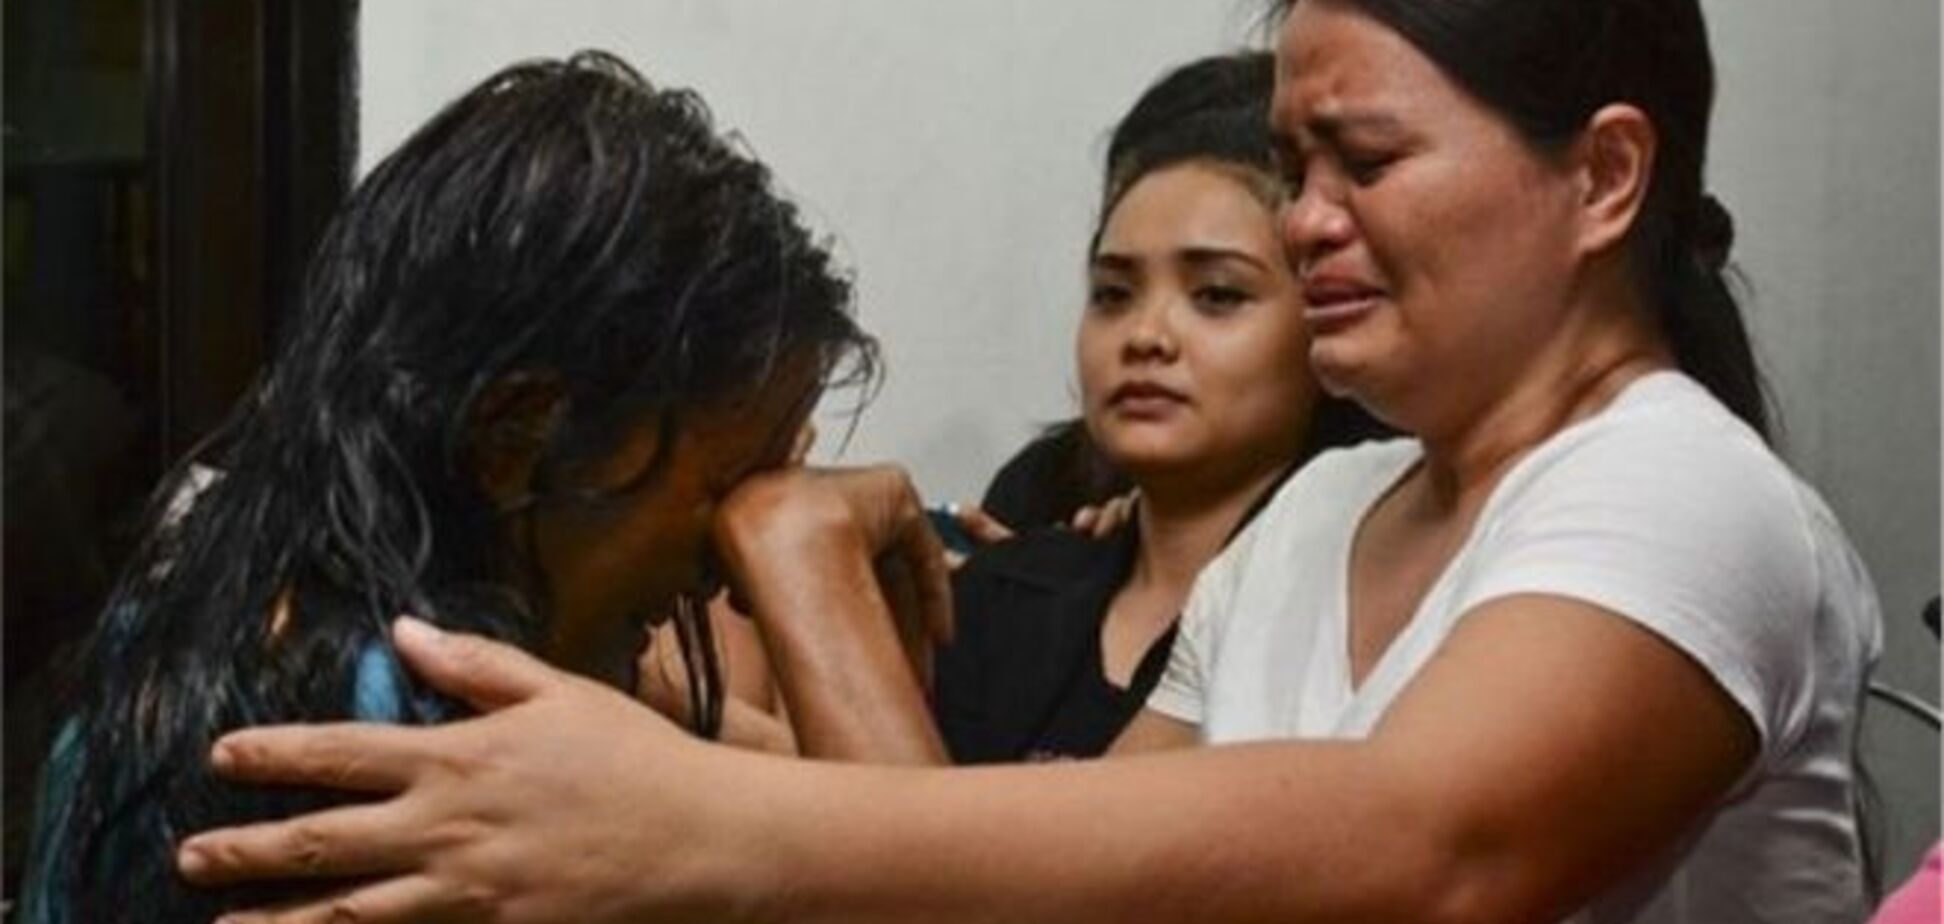 Аварія порома на Філіппінах: 26 загиблих, 215 зниклих безвісти